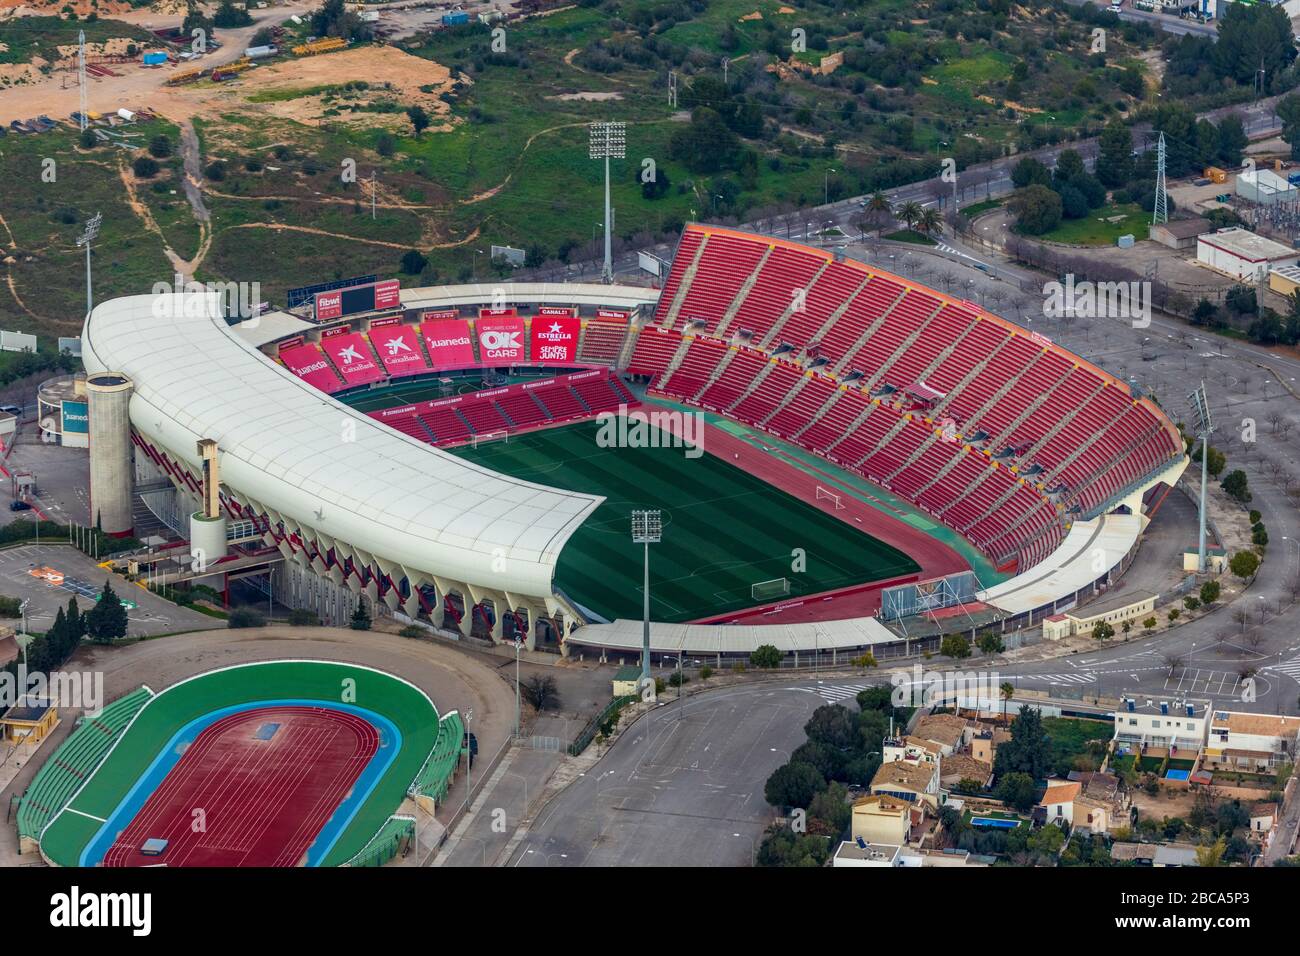 Vista aérea, Estadio de son Moix, estadio de fútbol, centro deportivo, Palma, Mallorca, España, Europa, Islas Baleares Foto de stock